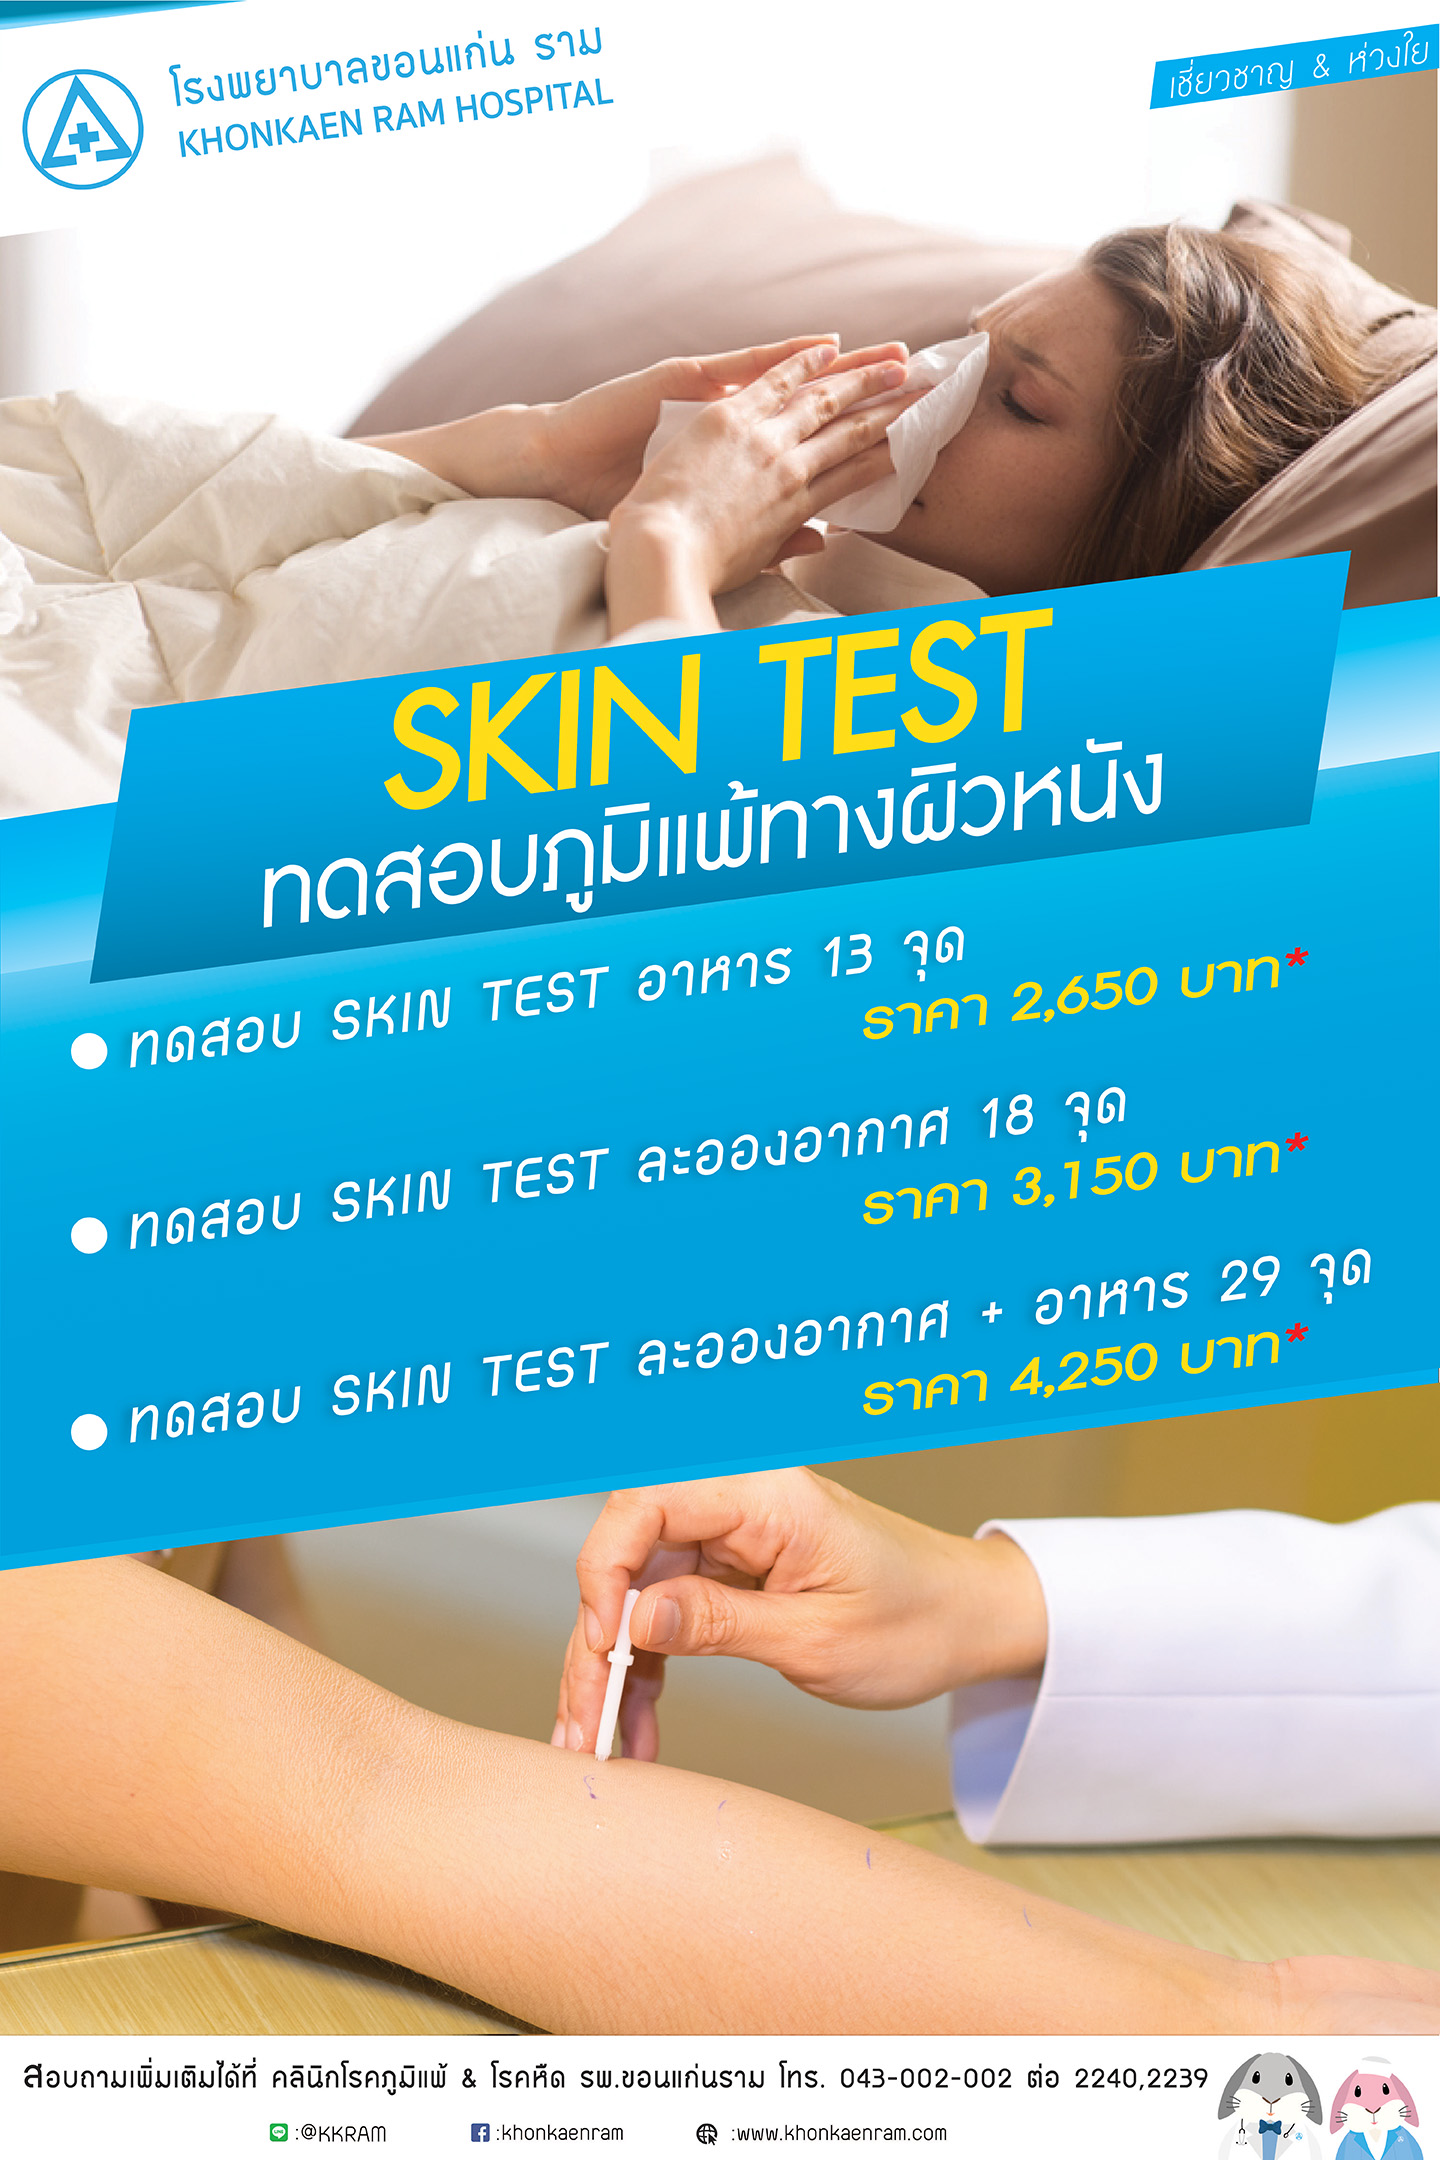  ทดสอบภูมิแพ้ผิวหนัง Skin Test 